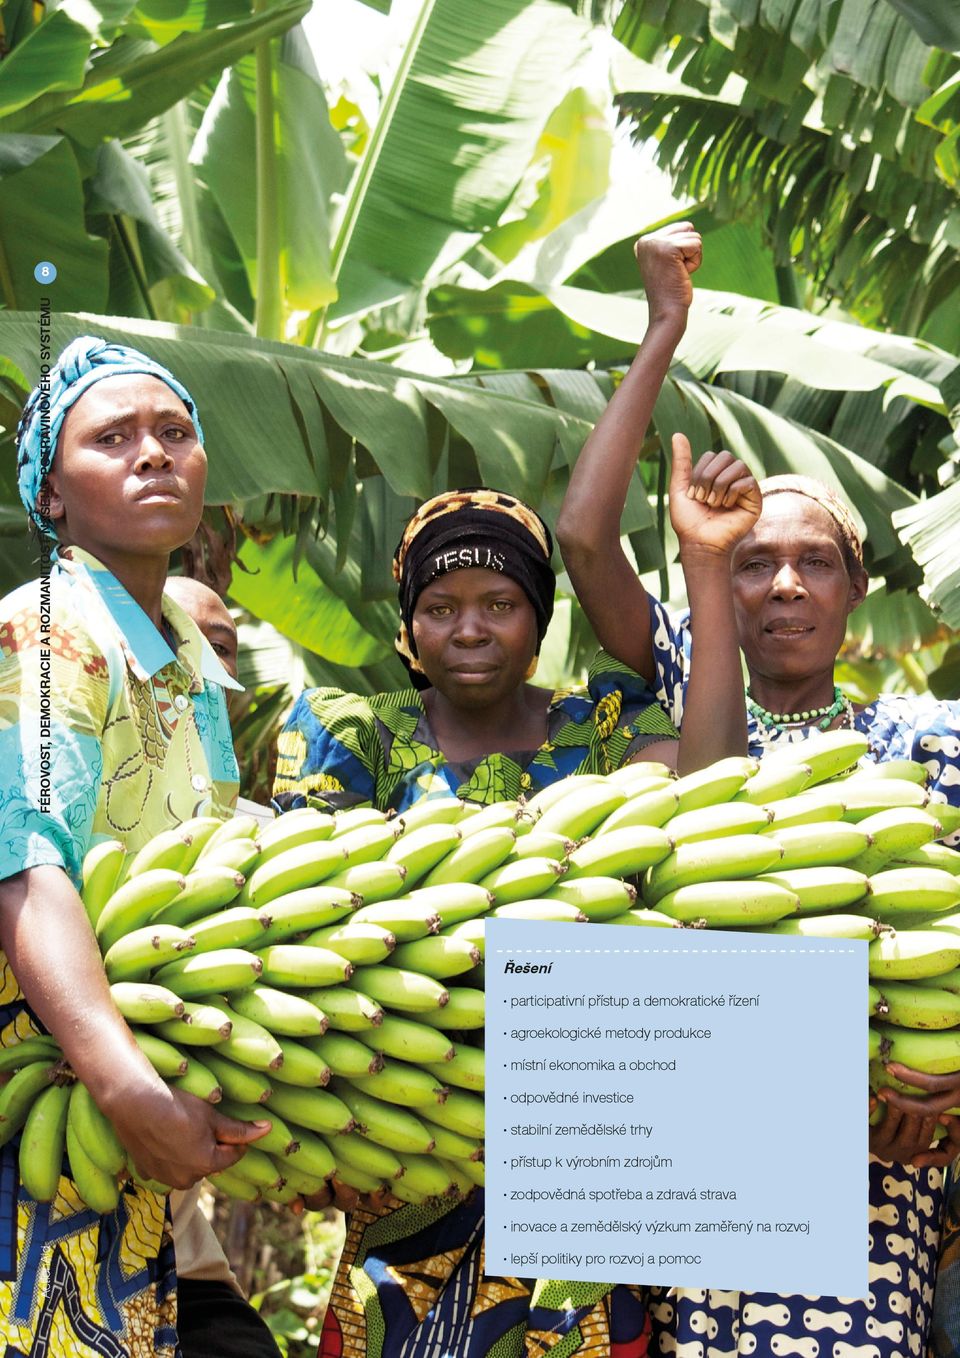 trhy přístup k výrobním zdrojům zodpovědná spotřeba a zdravá strava ActionAid